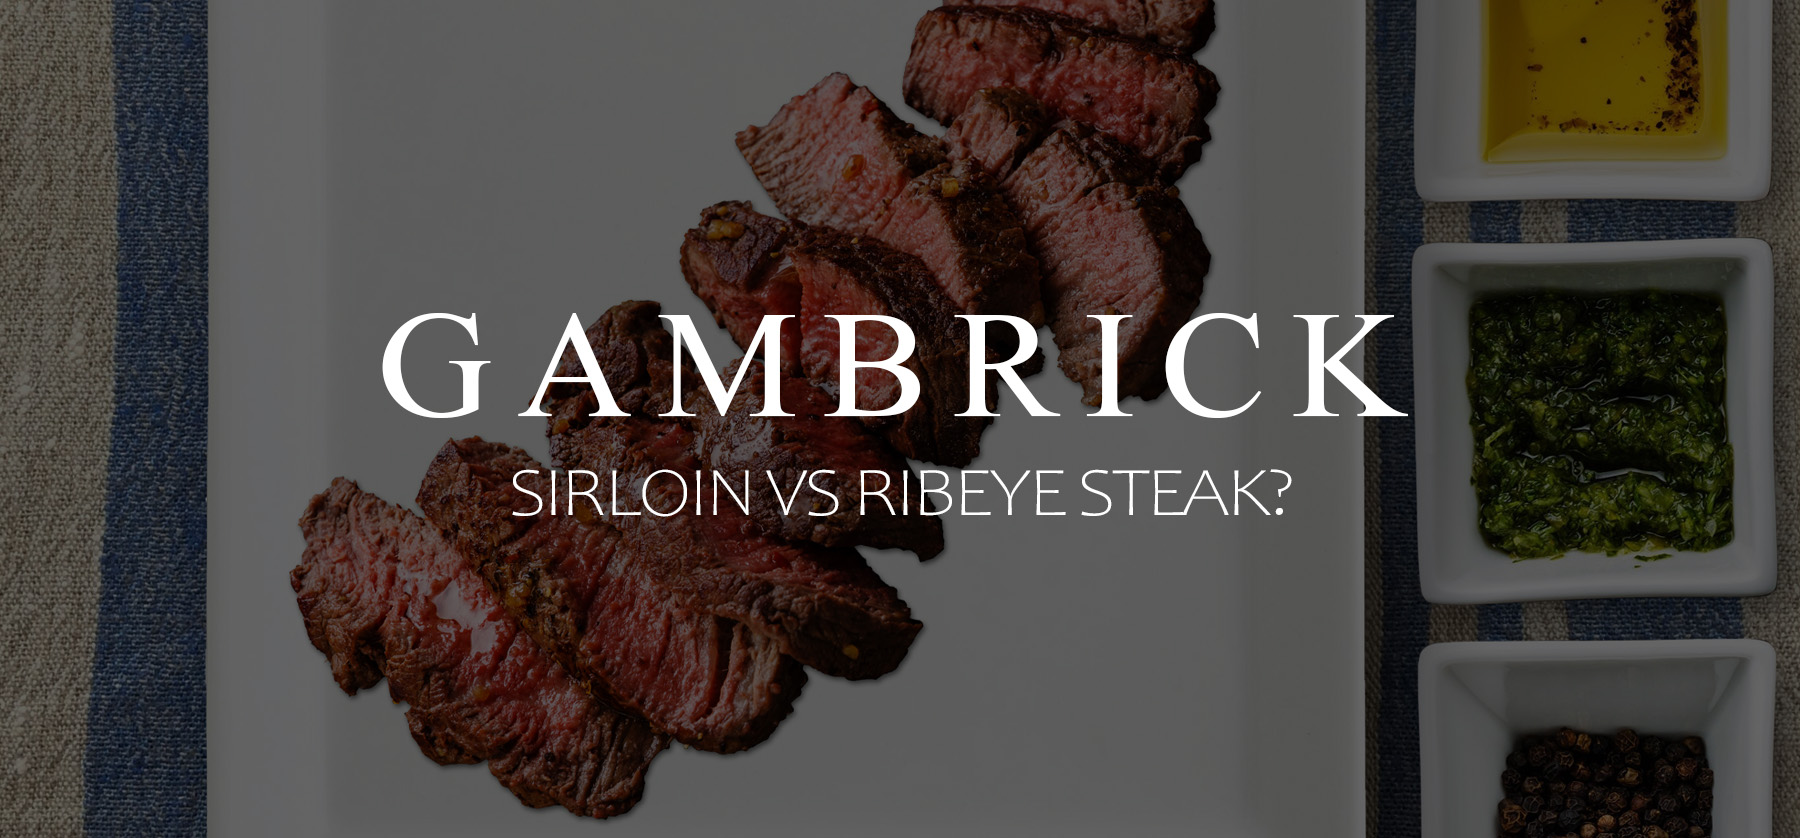 sirloin vs ribeye steak banner 1.1